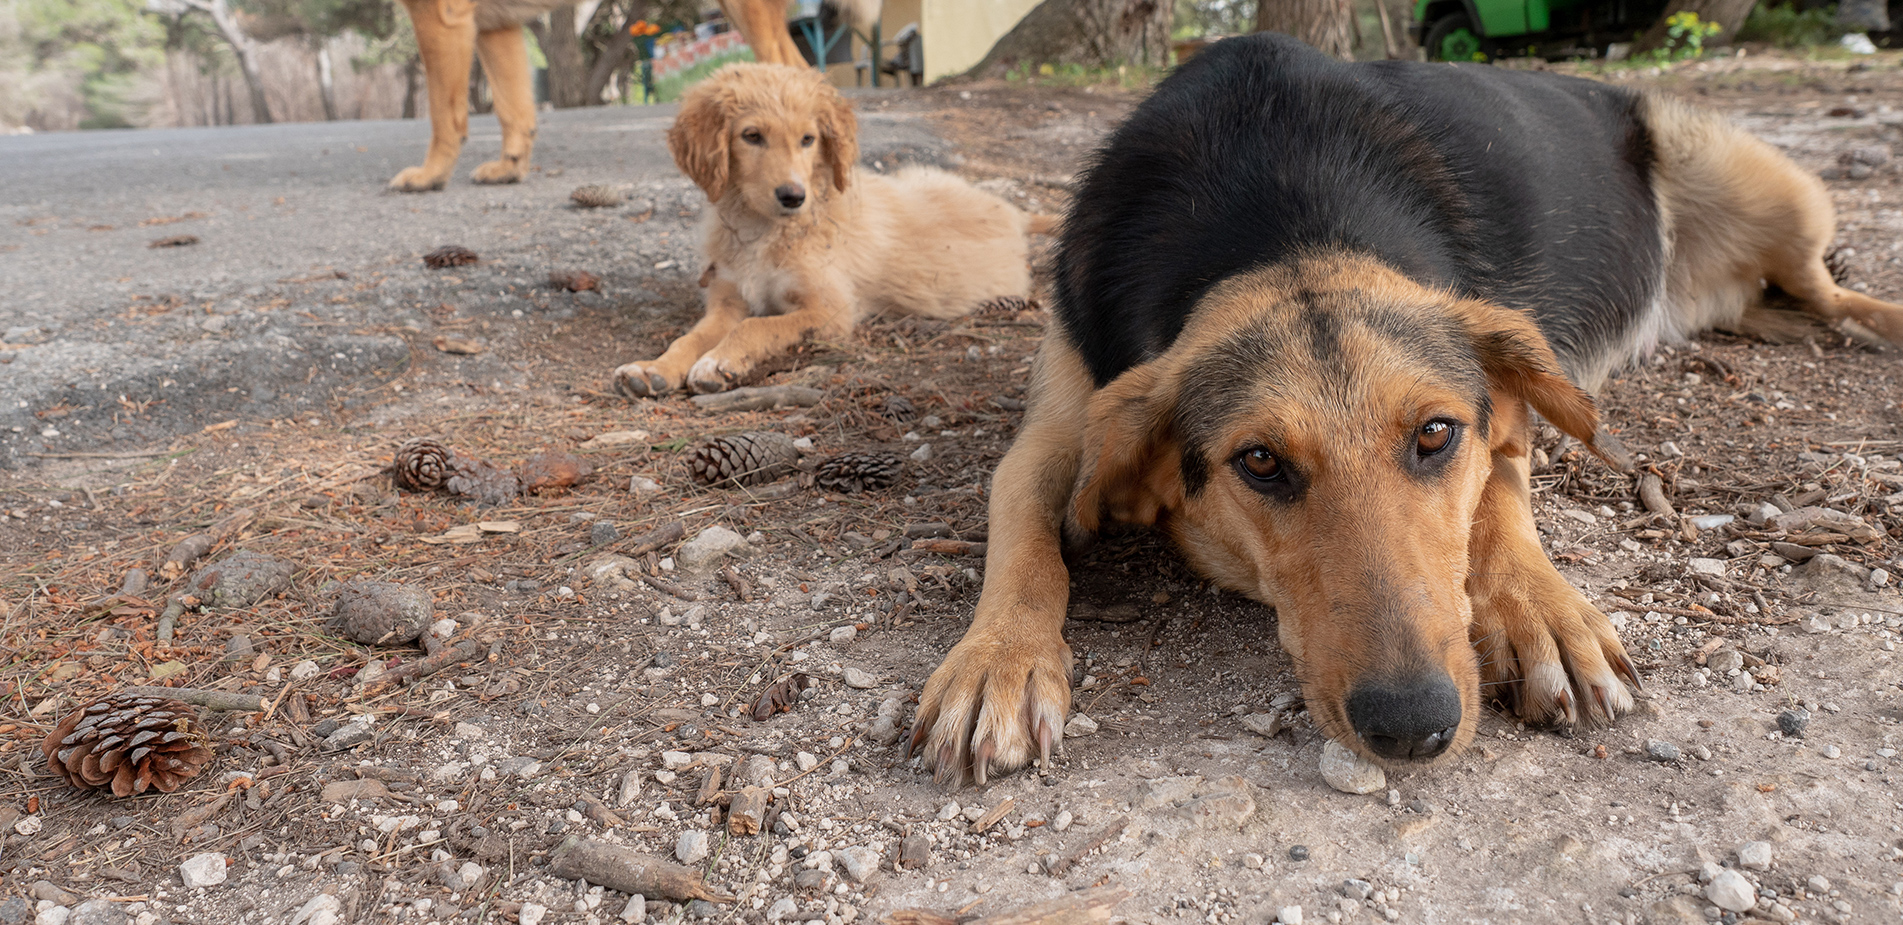 Η Ελλάδα έχει γεμίσει με αδέσποτα σκυλιά: 70.000 ζουν εγκαταλελειμμένα στα βουνά και 3 εκατ. σε όλη τη χώρα